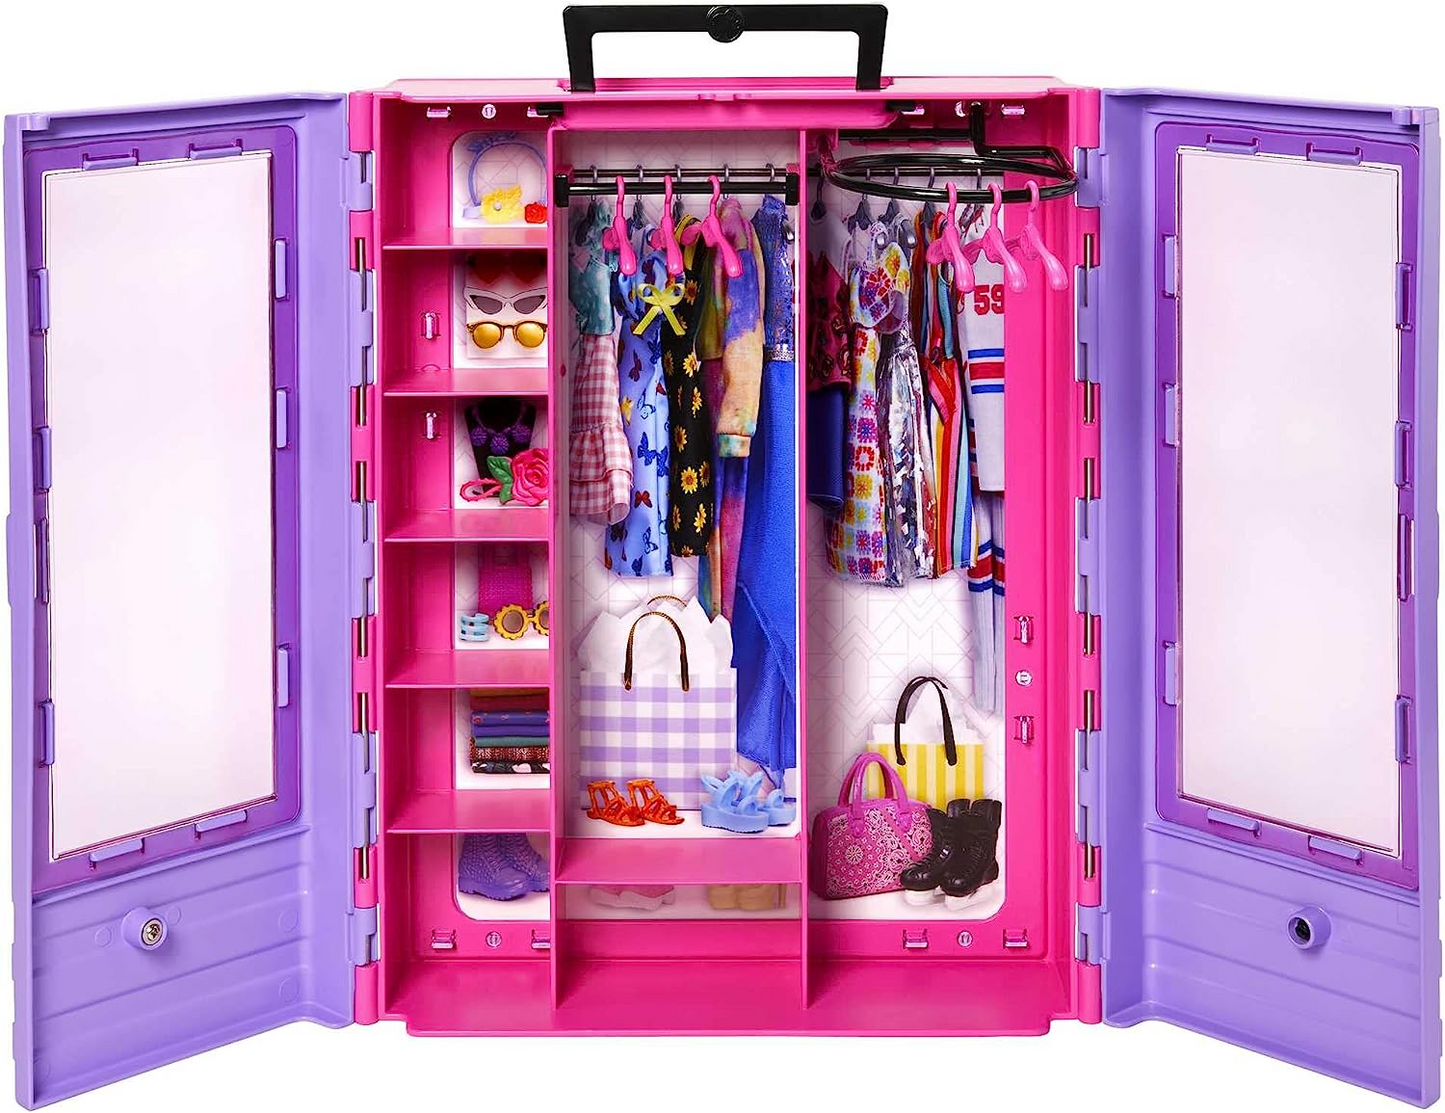 BARBIE BRAND  Fashionistas Ultimate Closet Portable Fashion Toy com boneca, roupas, acessórios e cabides, presente para crianças de 3 anos ou mais, HJL66